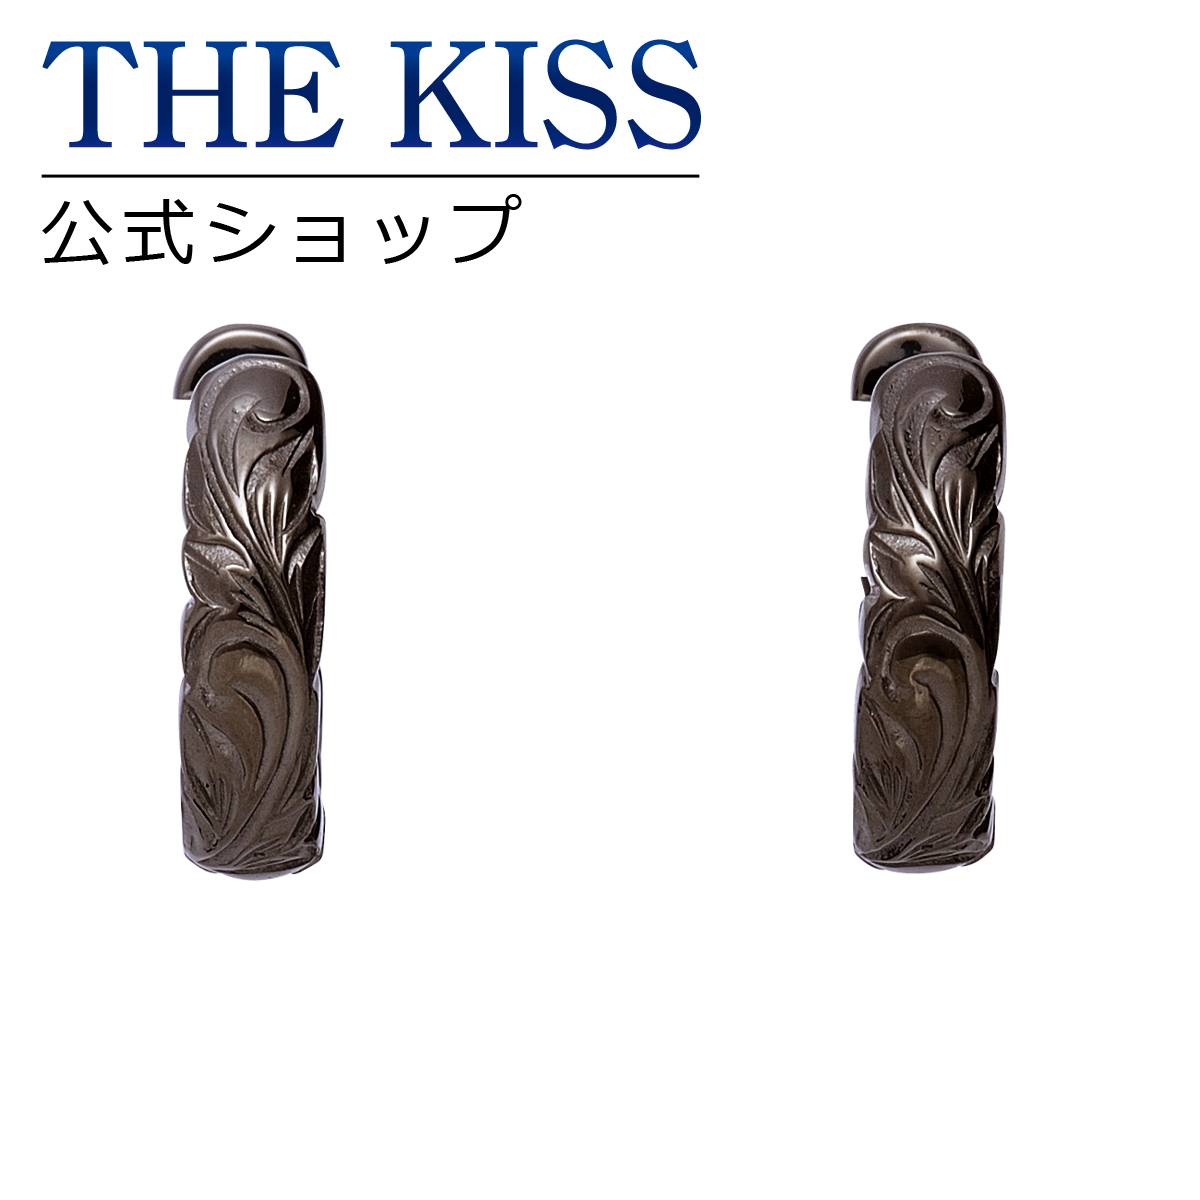 楽天市場 The Kiss 公式ショップ ステンレス ハワイアン ペアピアス メンズ 単品 ペアアクセサリー カップル に 人気 の ジュエリーブランド Thekiss ペア ピアス 記念日 プレゼント L Pe8017 ザキス 送料無料 あす楽対応 The Kiss 公式ショップ